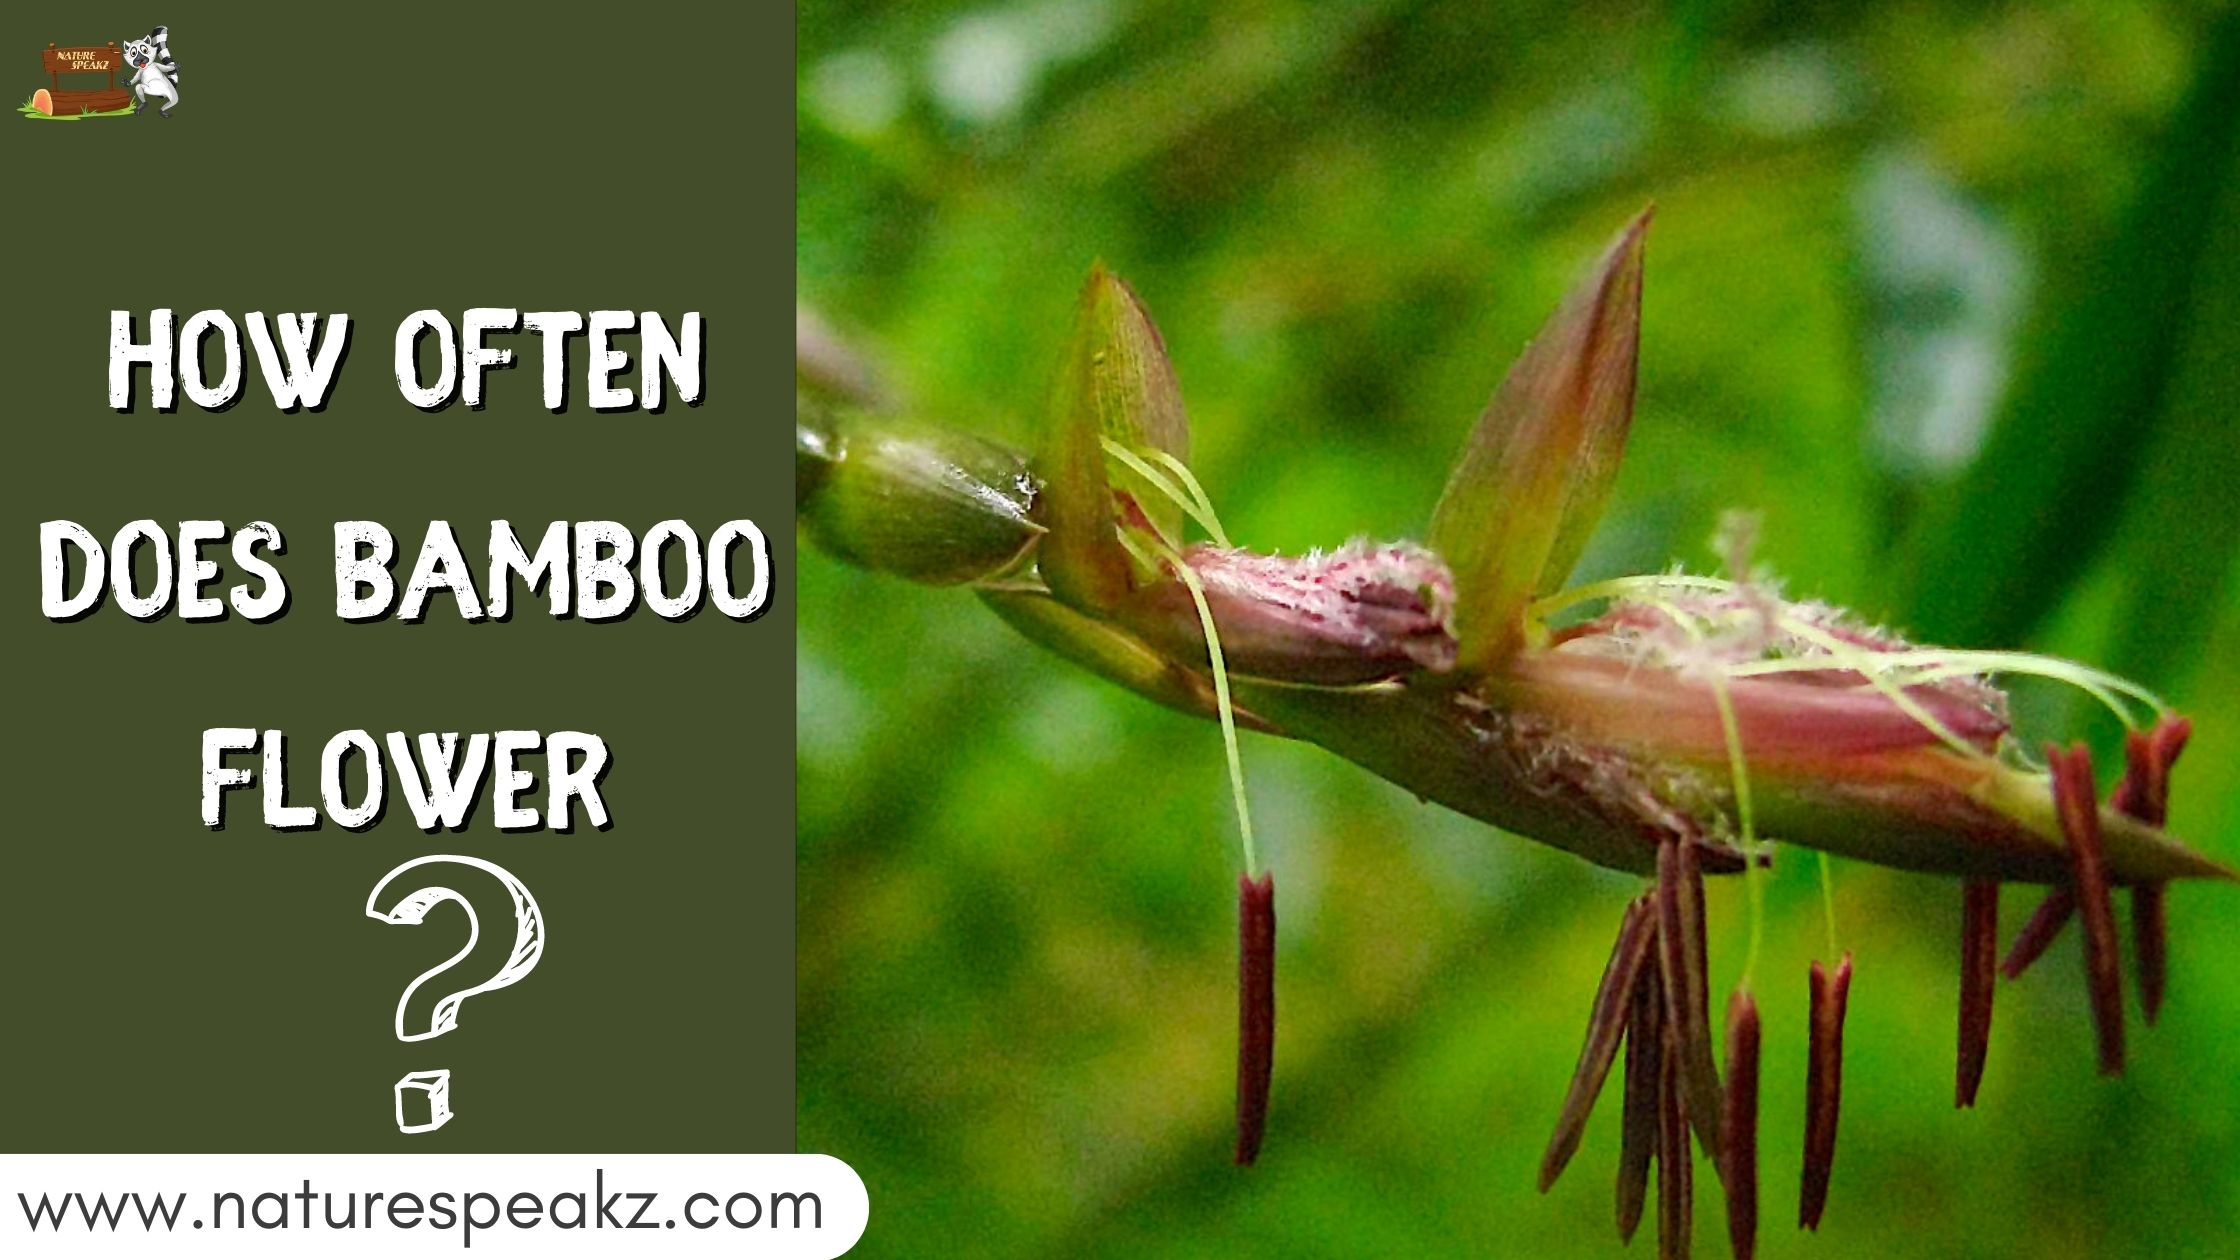 How often does bamboo flower